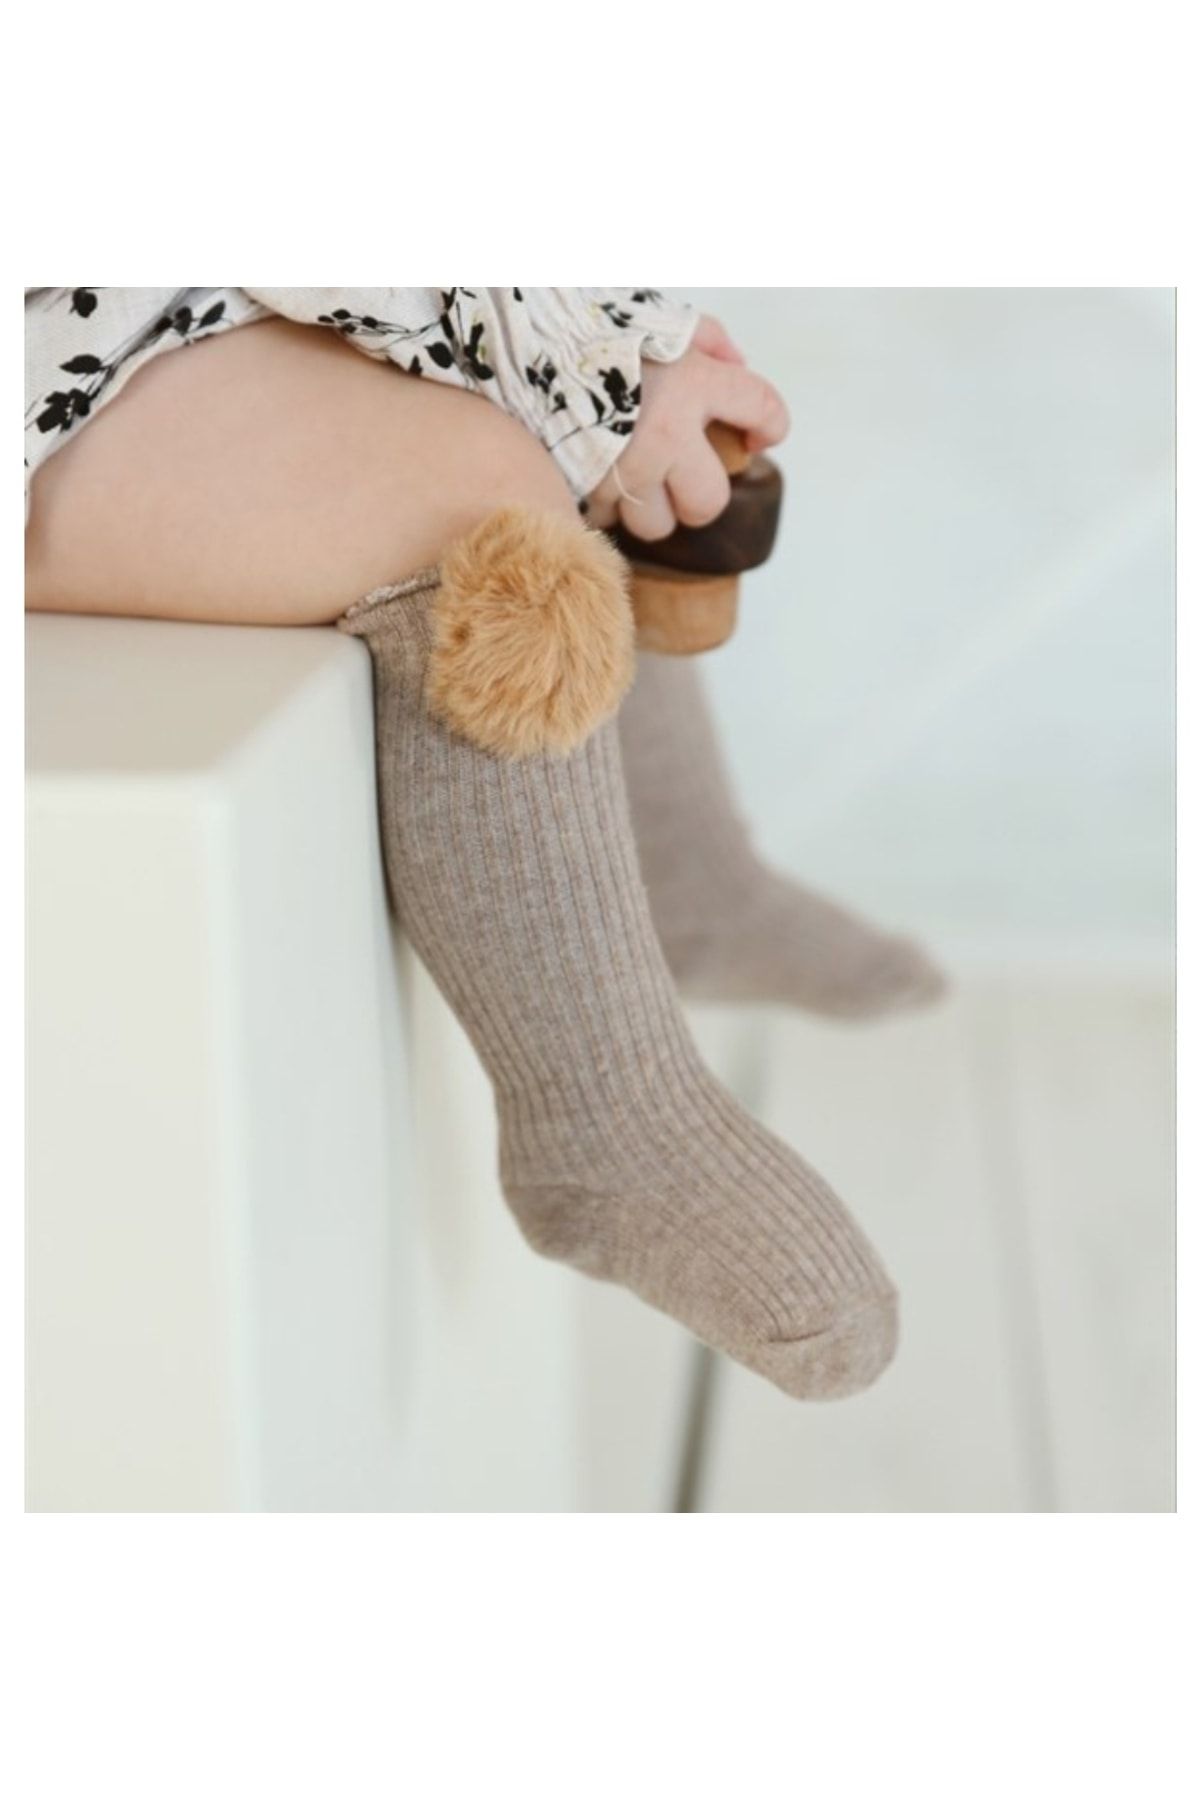 BEBEĞİME ÇORAP Kız Bebek Çorabı - Kız Çocuk Çorabı Bej Ponponlu Dizaltı Çorap 4-5 Yaş